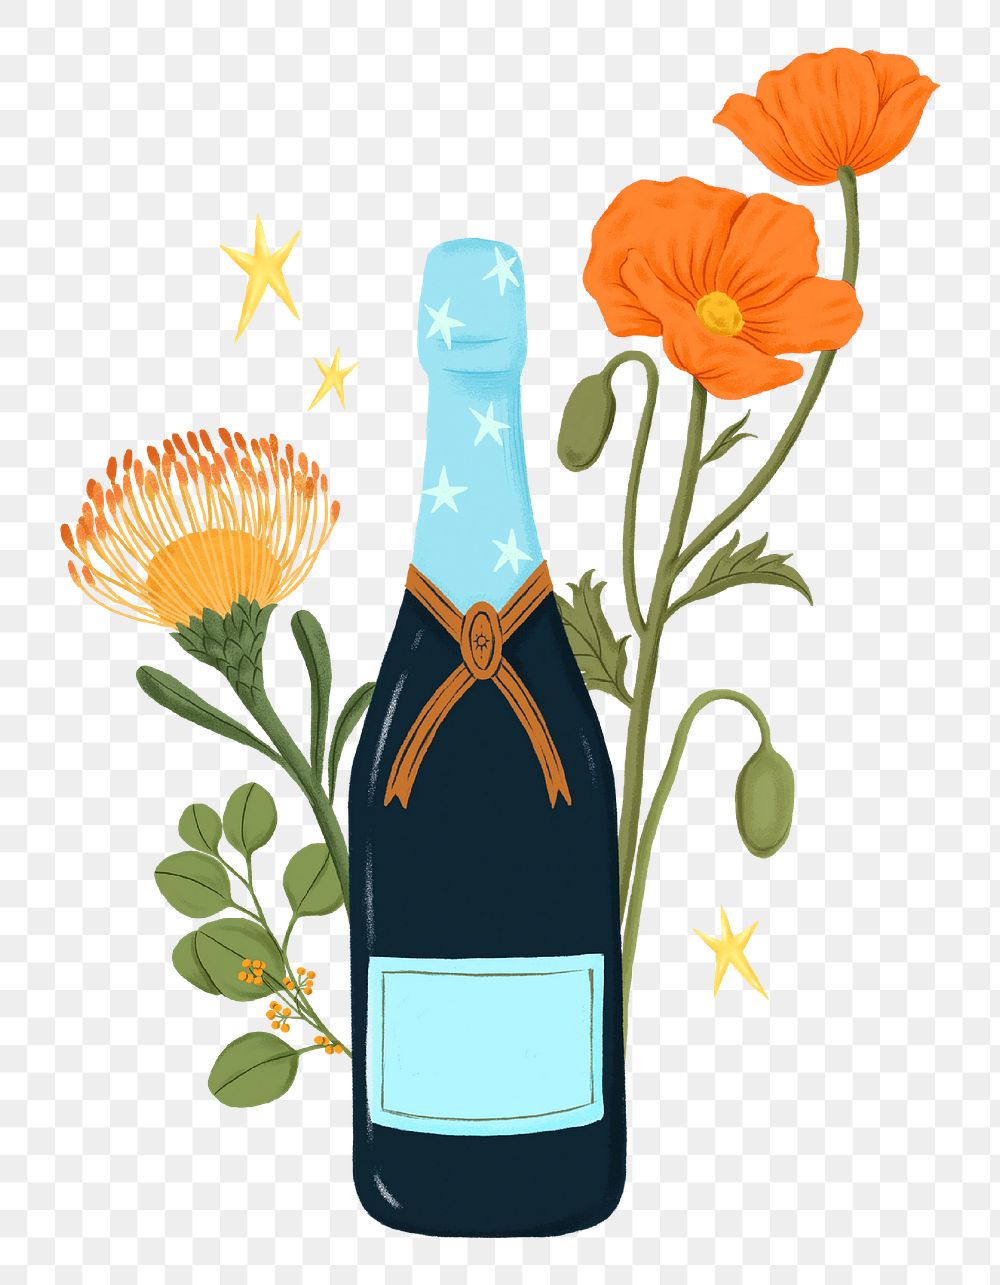 Floral champagne bottle png sticker, celebration drink illustration, transparent background